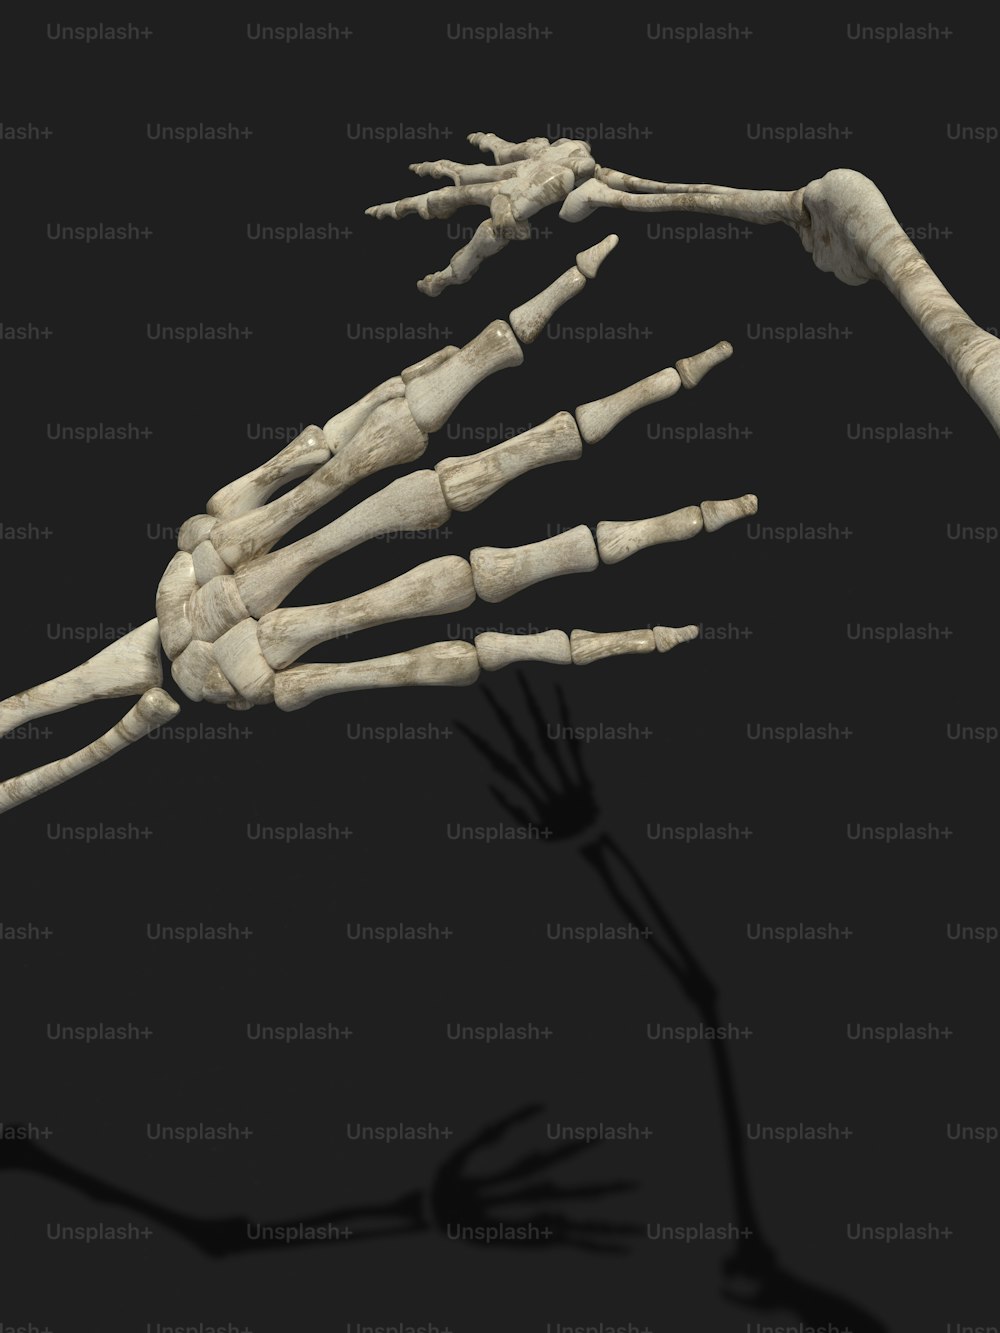 Das Skelett einer Person ist in diesem Bild dargestellt